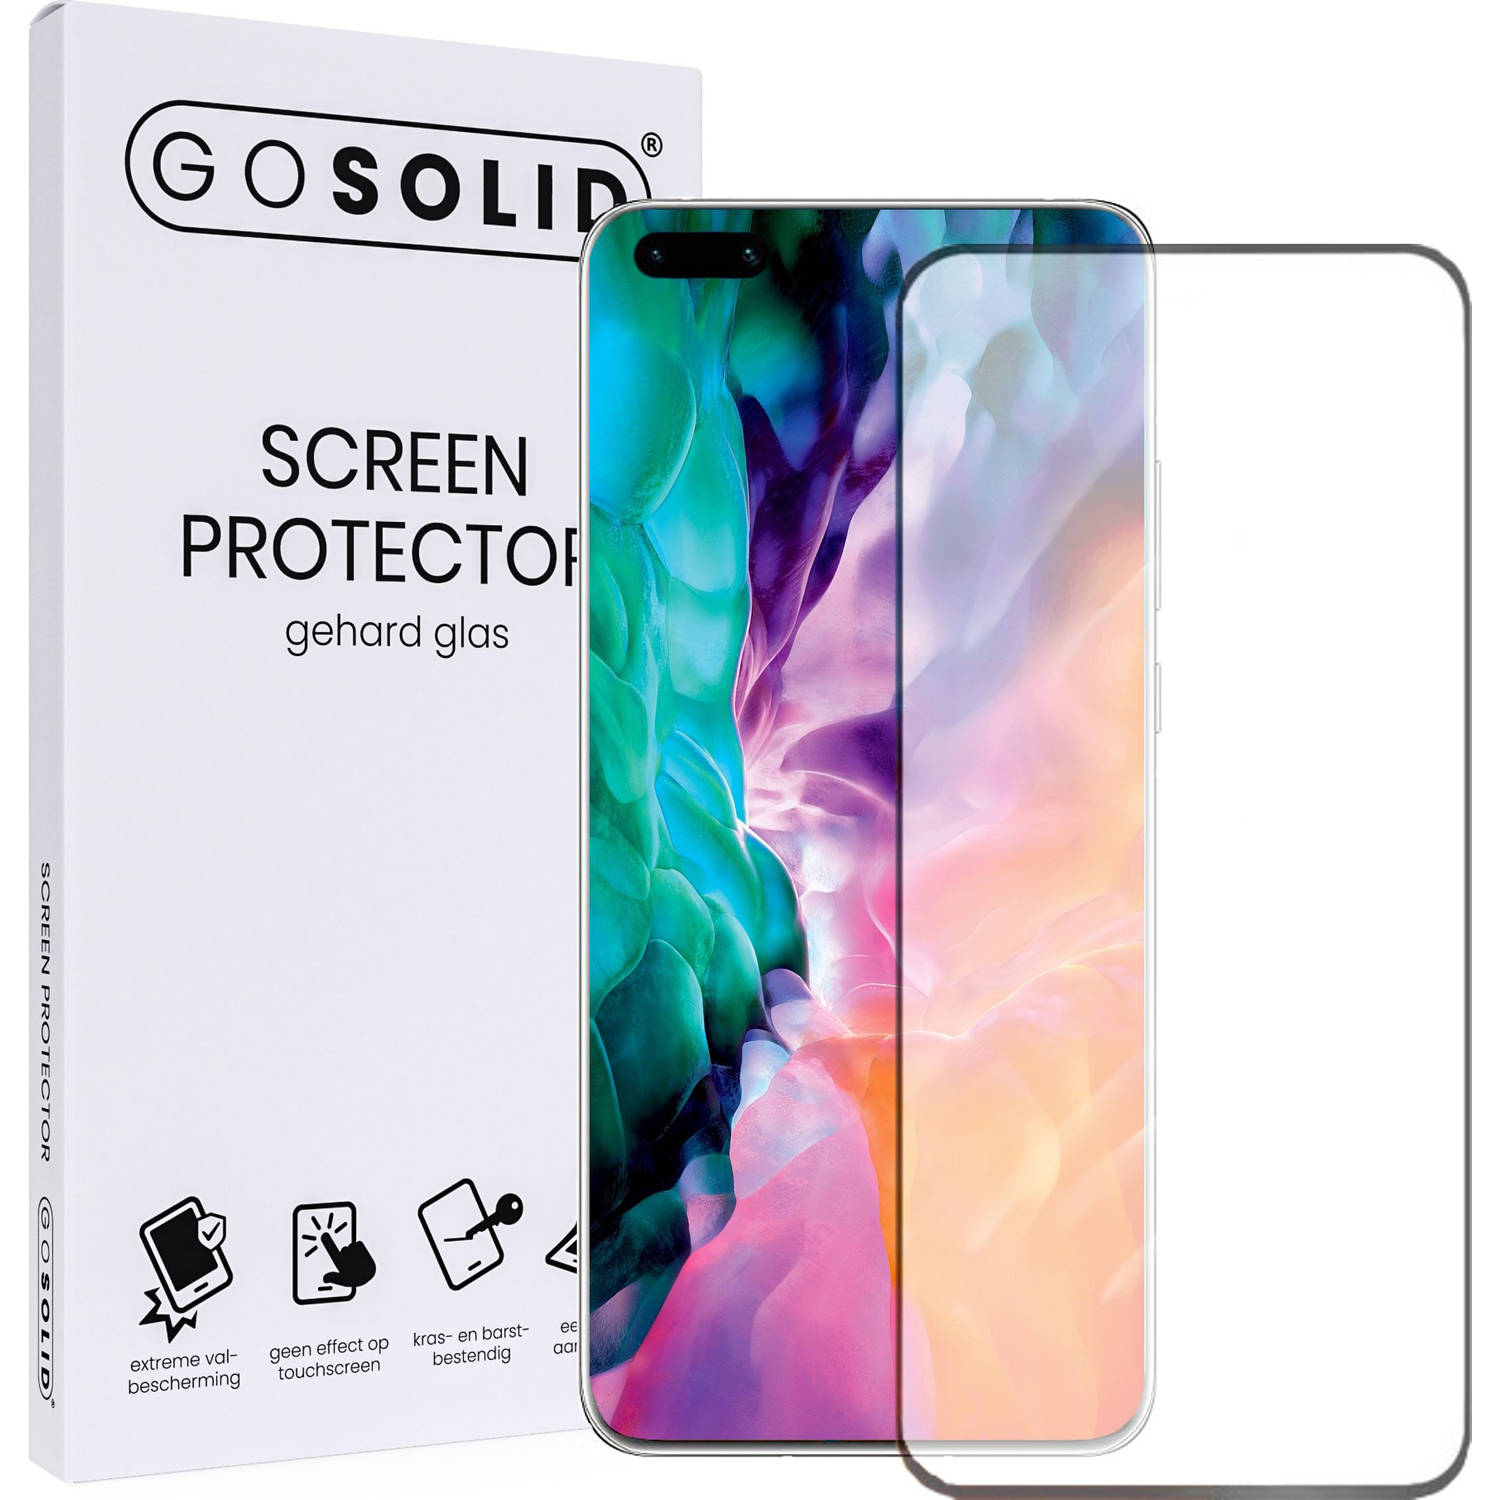 GO SOLID! Screenprotector voor Realme X50